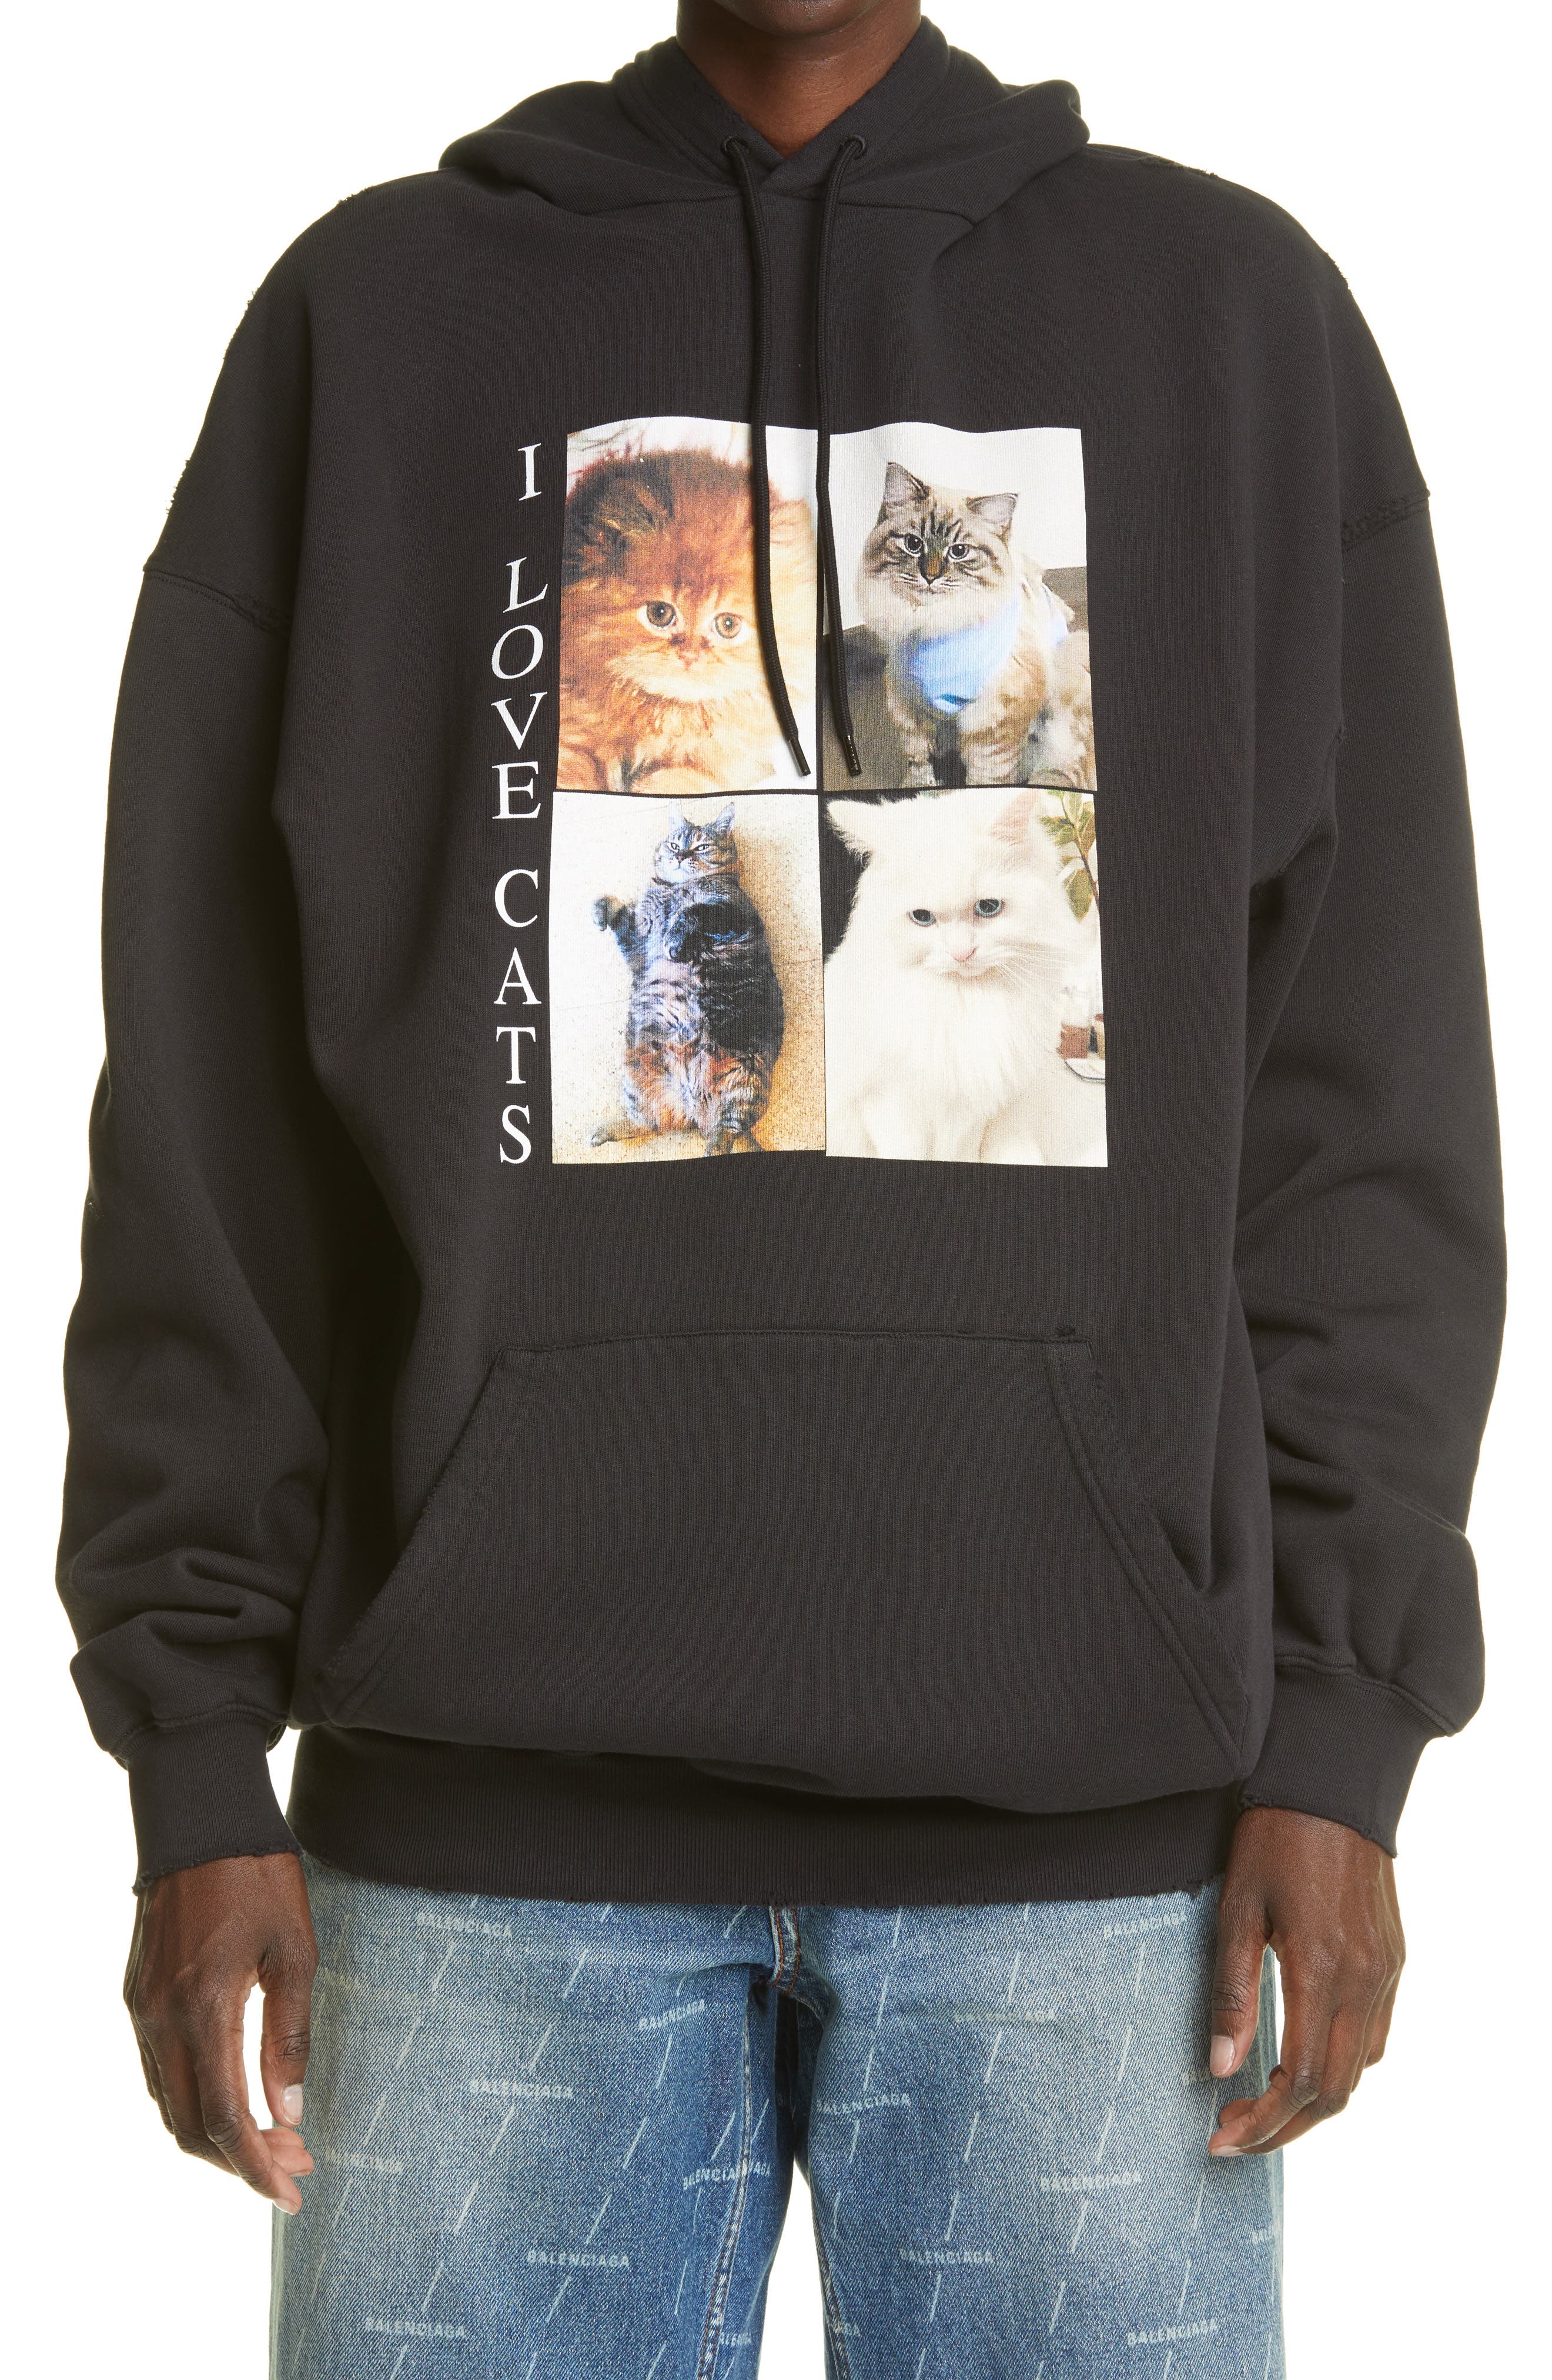 Unisex Lover Sweatshirts Cat Print Hoodie Pocket Long Sleeve Pullover Top Blouse